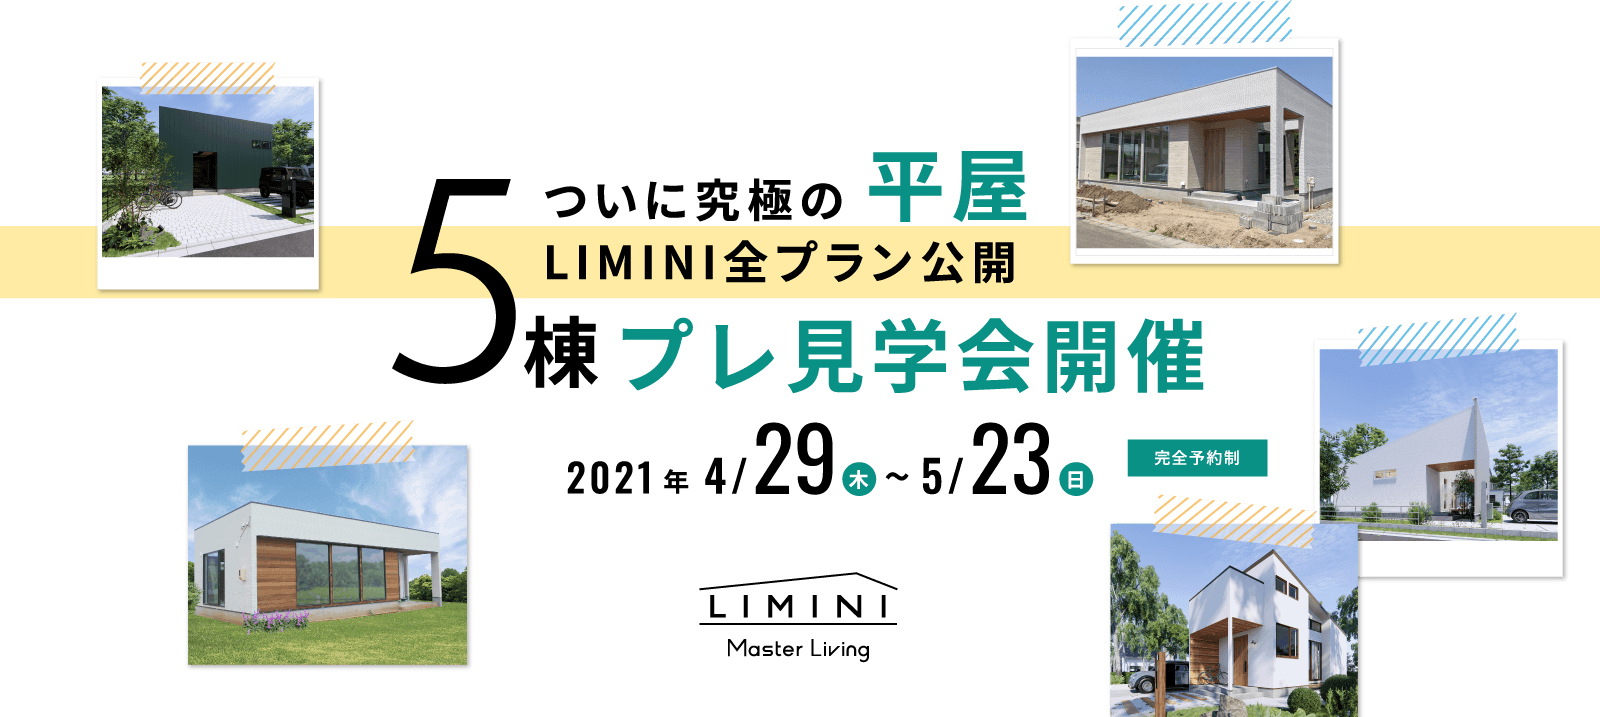 ついに究極の平屋 LIMINI全プラン公開 5棟プレ見学会開催 2021年4月29日〜5月23日